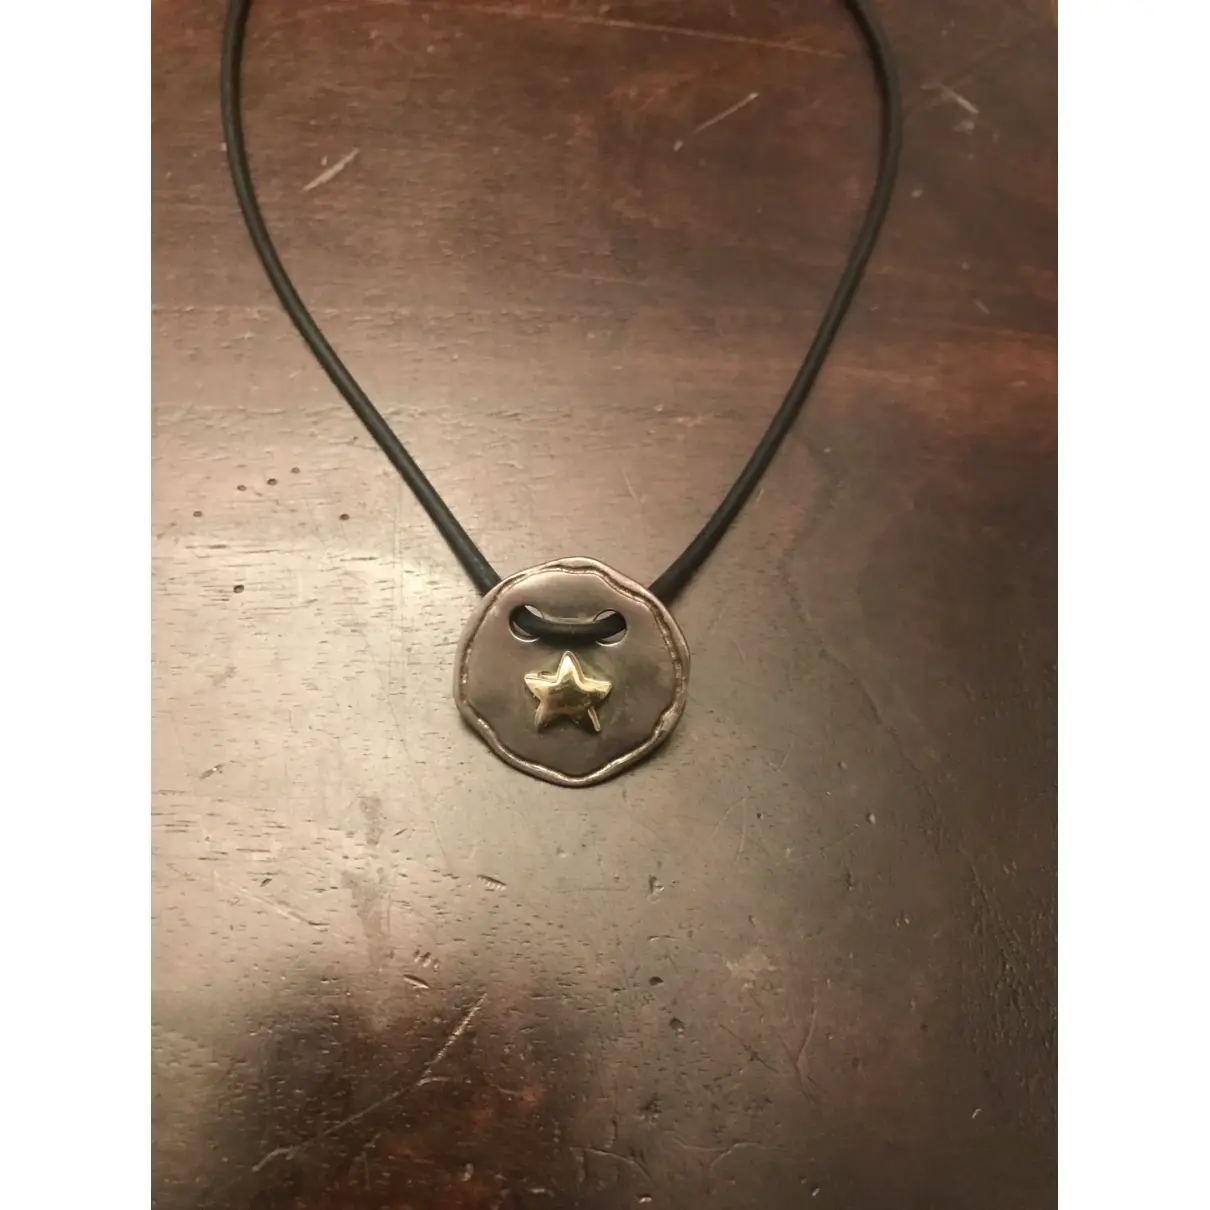 Dodo Silver pendant for sale